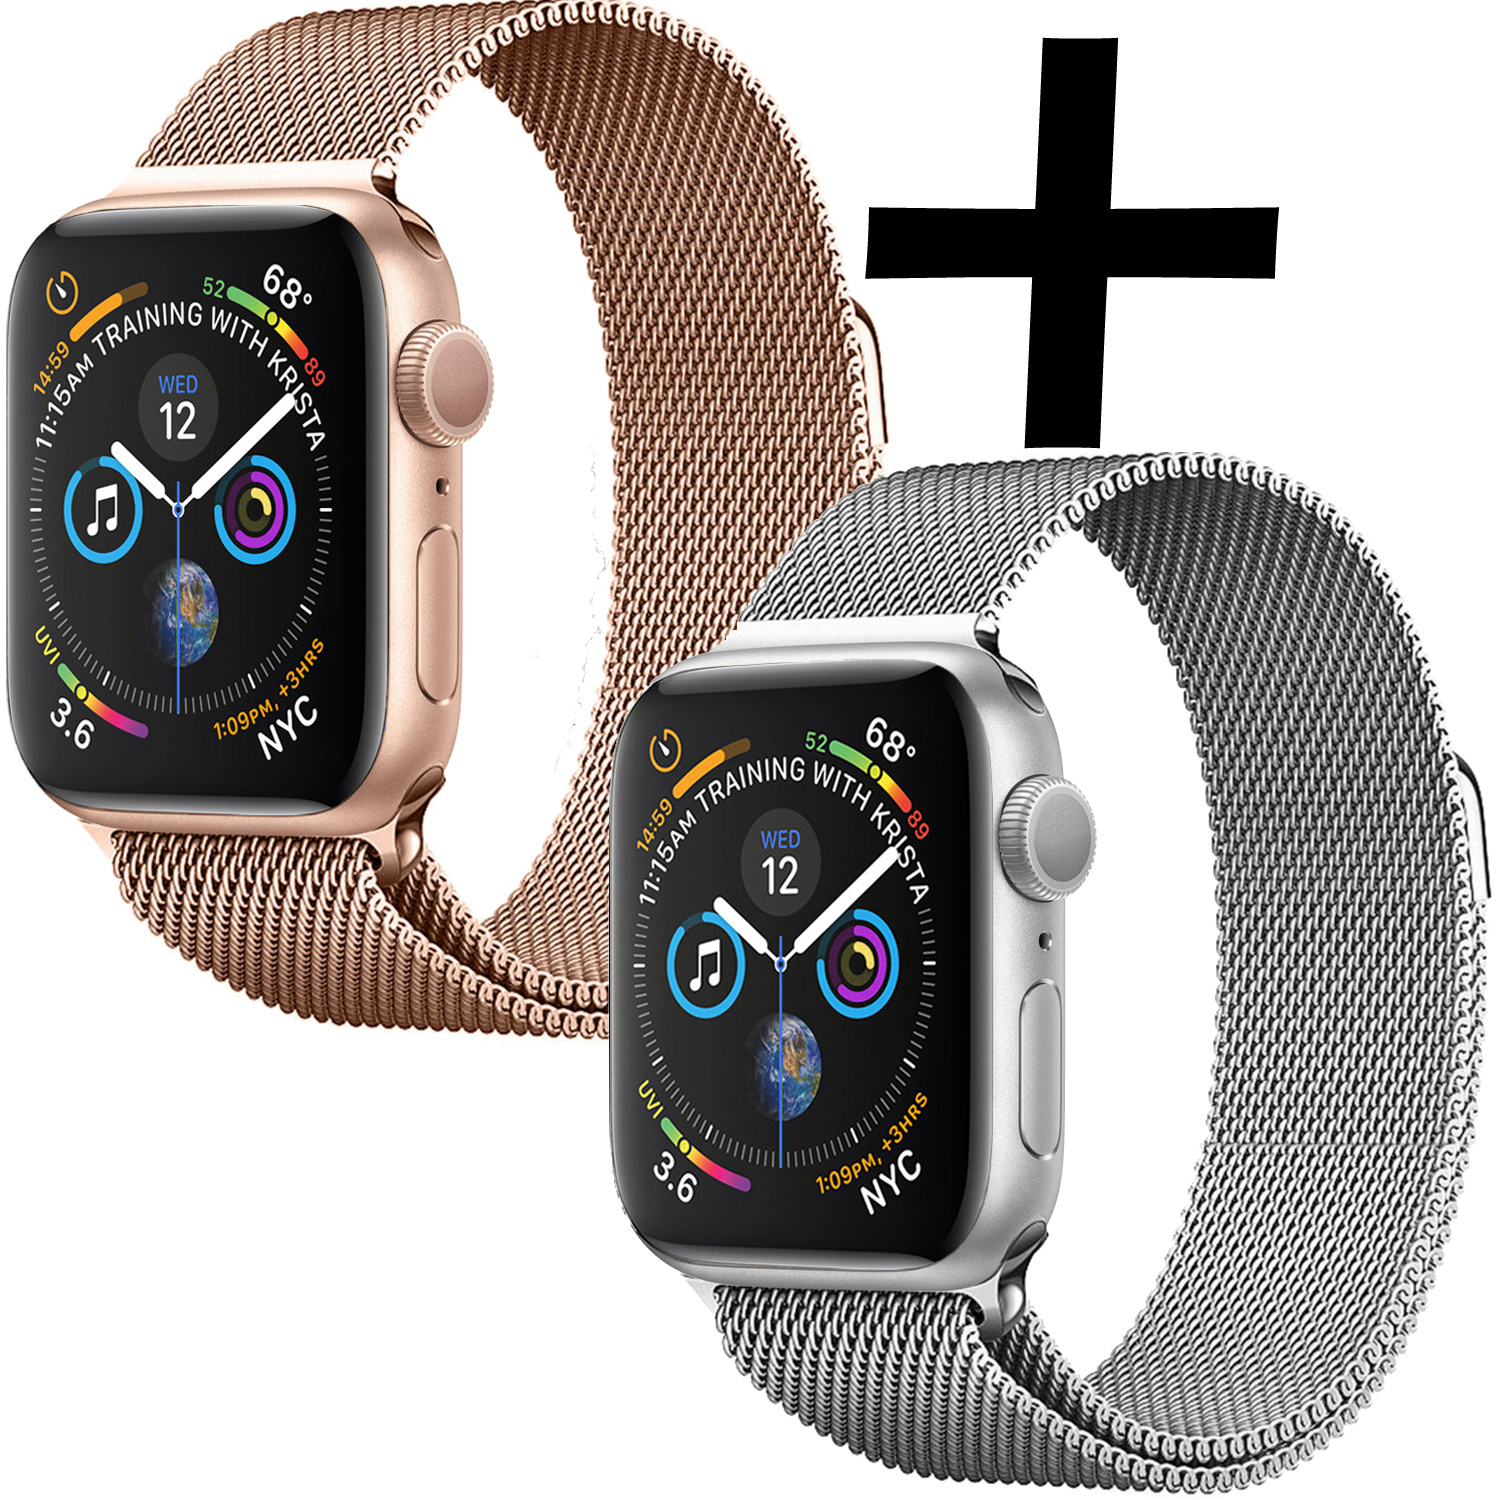 Nomfy Geschikt Voor Apple Watch 7 Bandje Zilver Milanees Horloge Band Voor Apple Watch 7 Band (41) mm - Zilver x Rose Goud